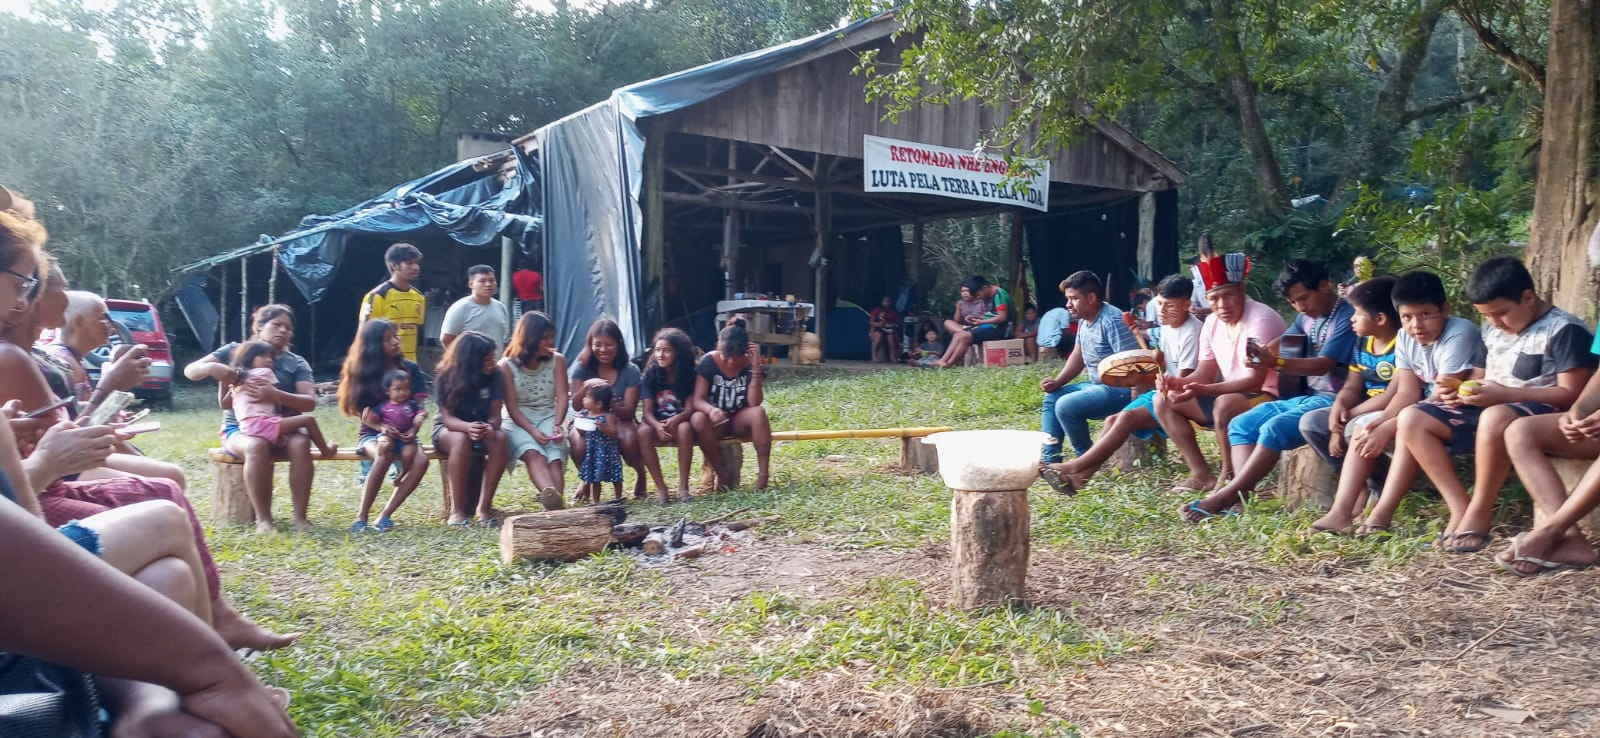 RETOMADA NHE`ENGATU: povo Guarani Mbya luta por território ancestral em Viamão-RS